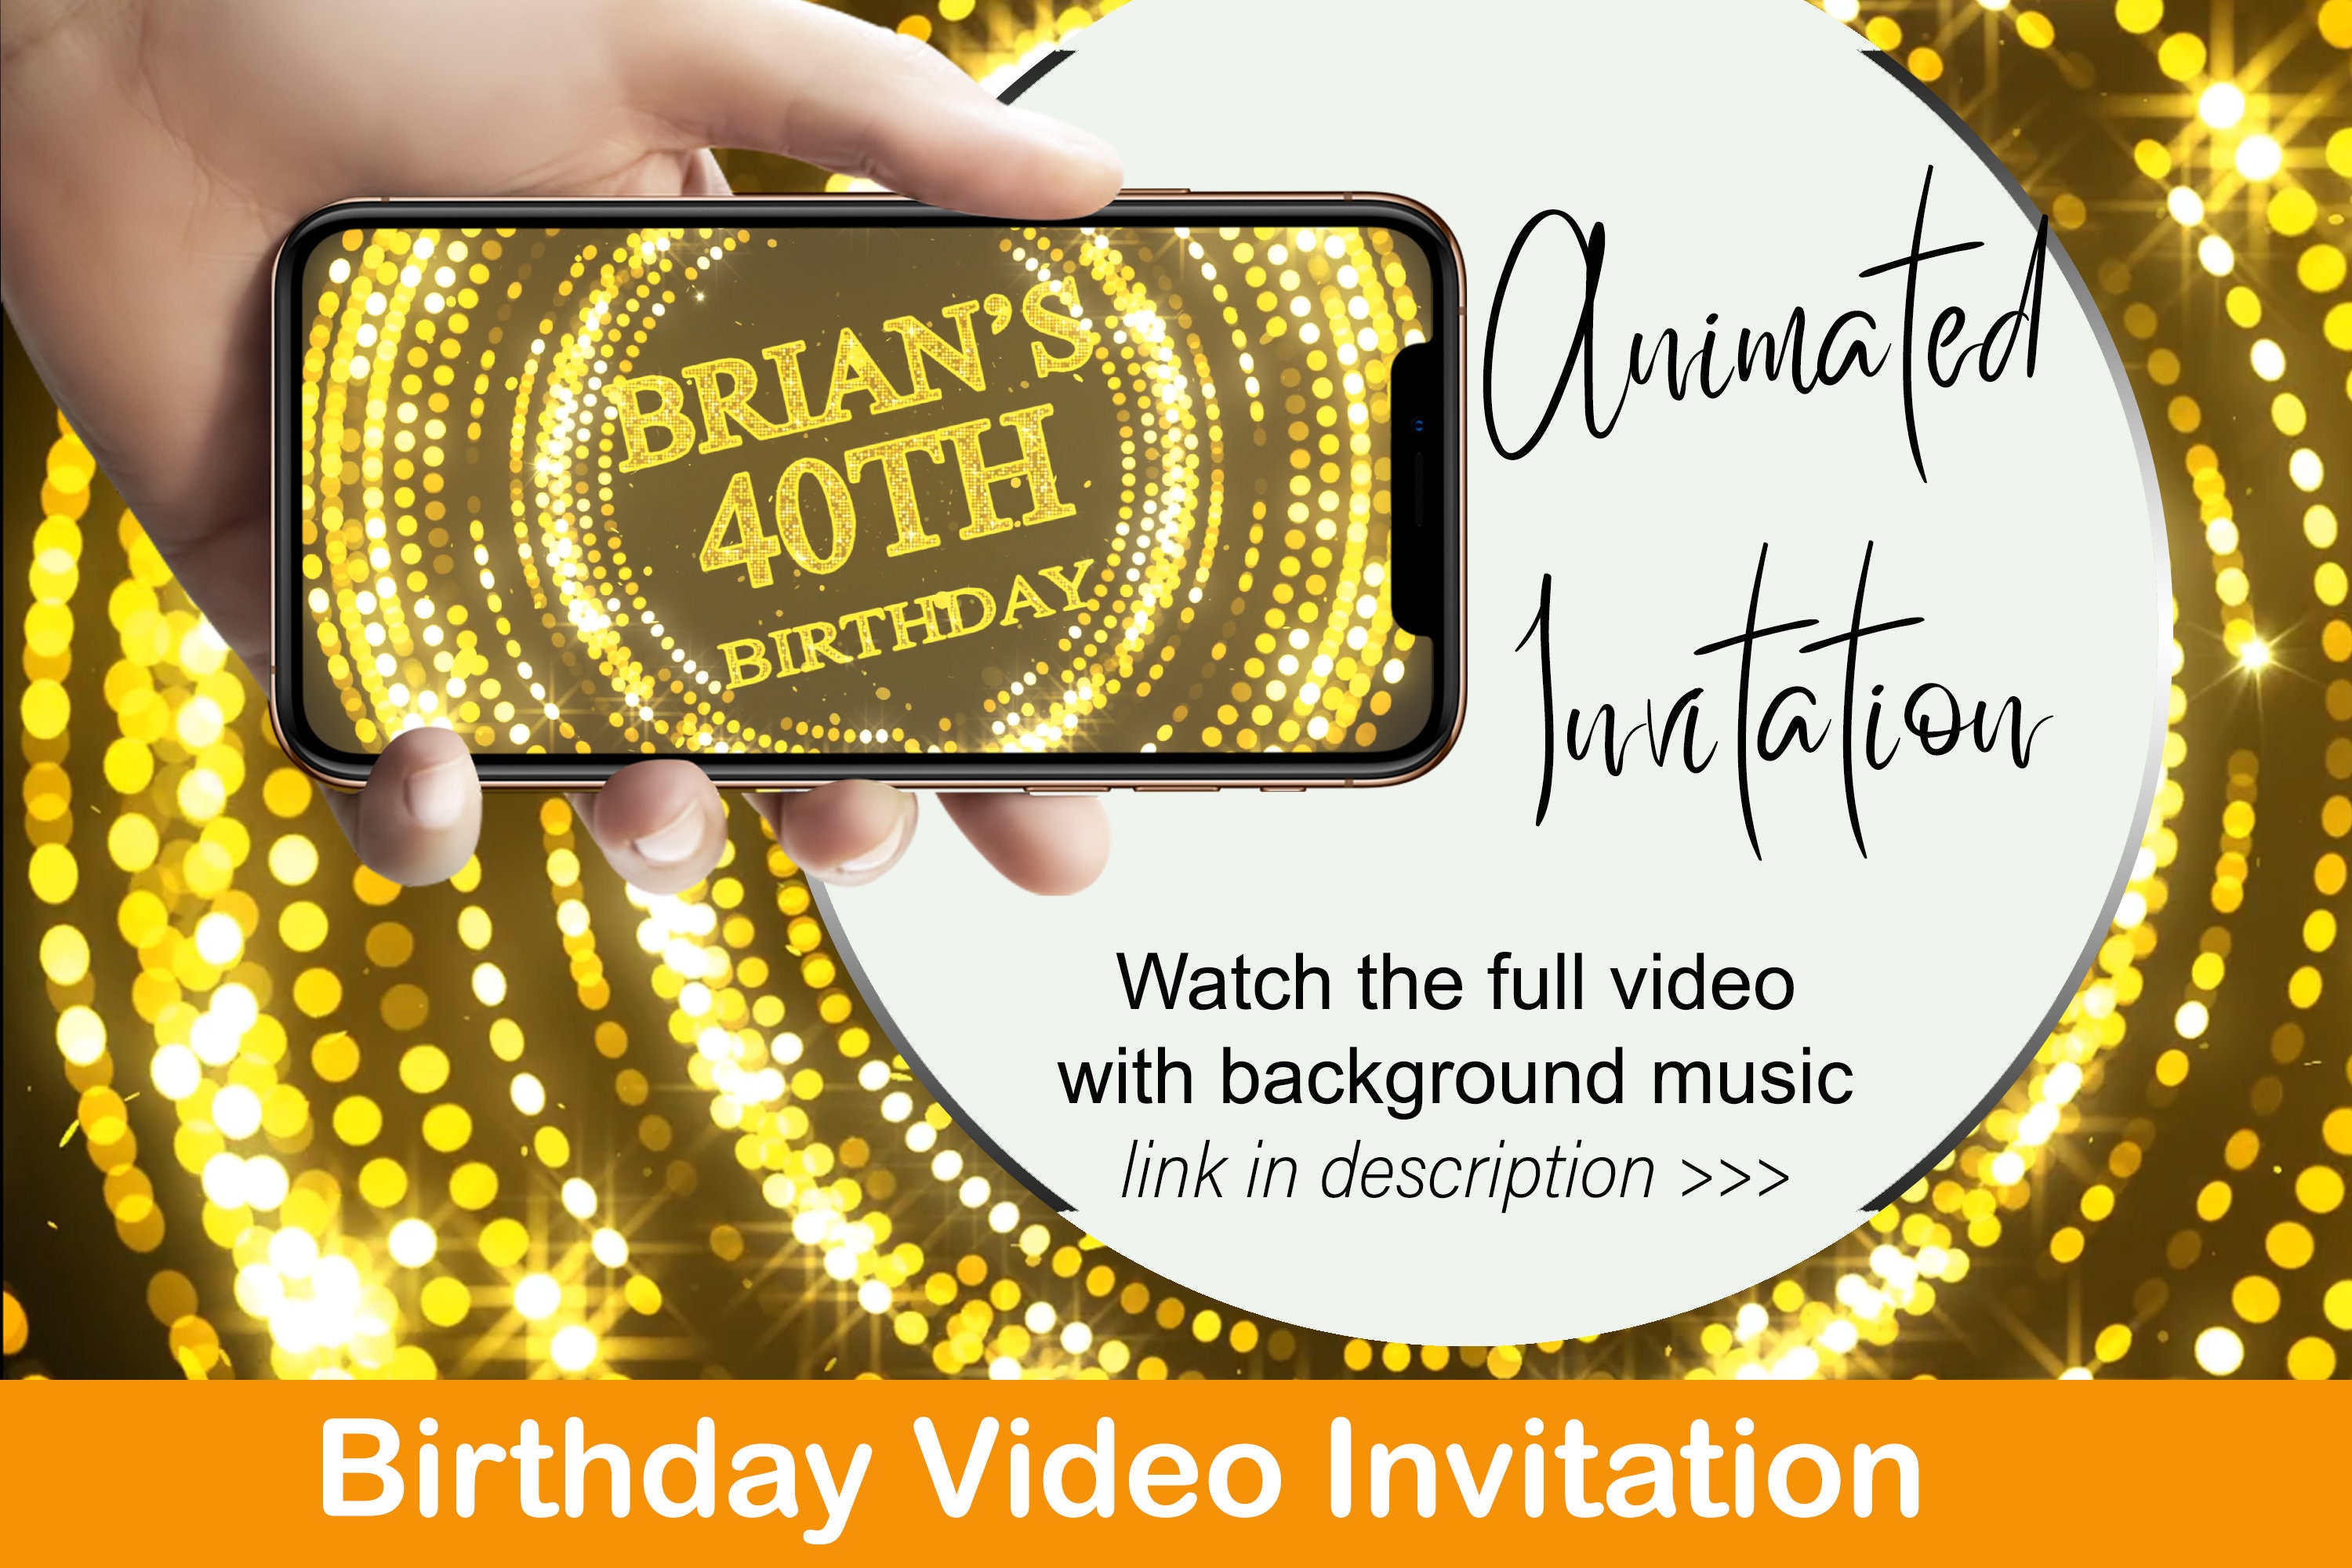 Hãy cùng xem một màn mời dự tiệc đầy ấn tượng thông qua video invitation độc đáo và thú vị của chúng tôi. Bạn sẽ được trải nghiệm một cách hoàn toàn mới lạ để tạo sự bất ngờ và ấn tượng cho những người thân yêu của mình.